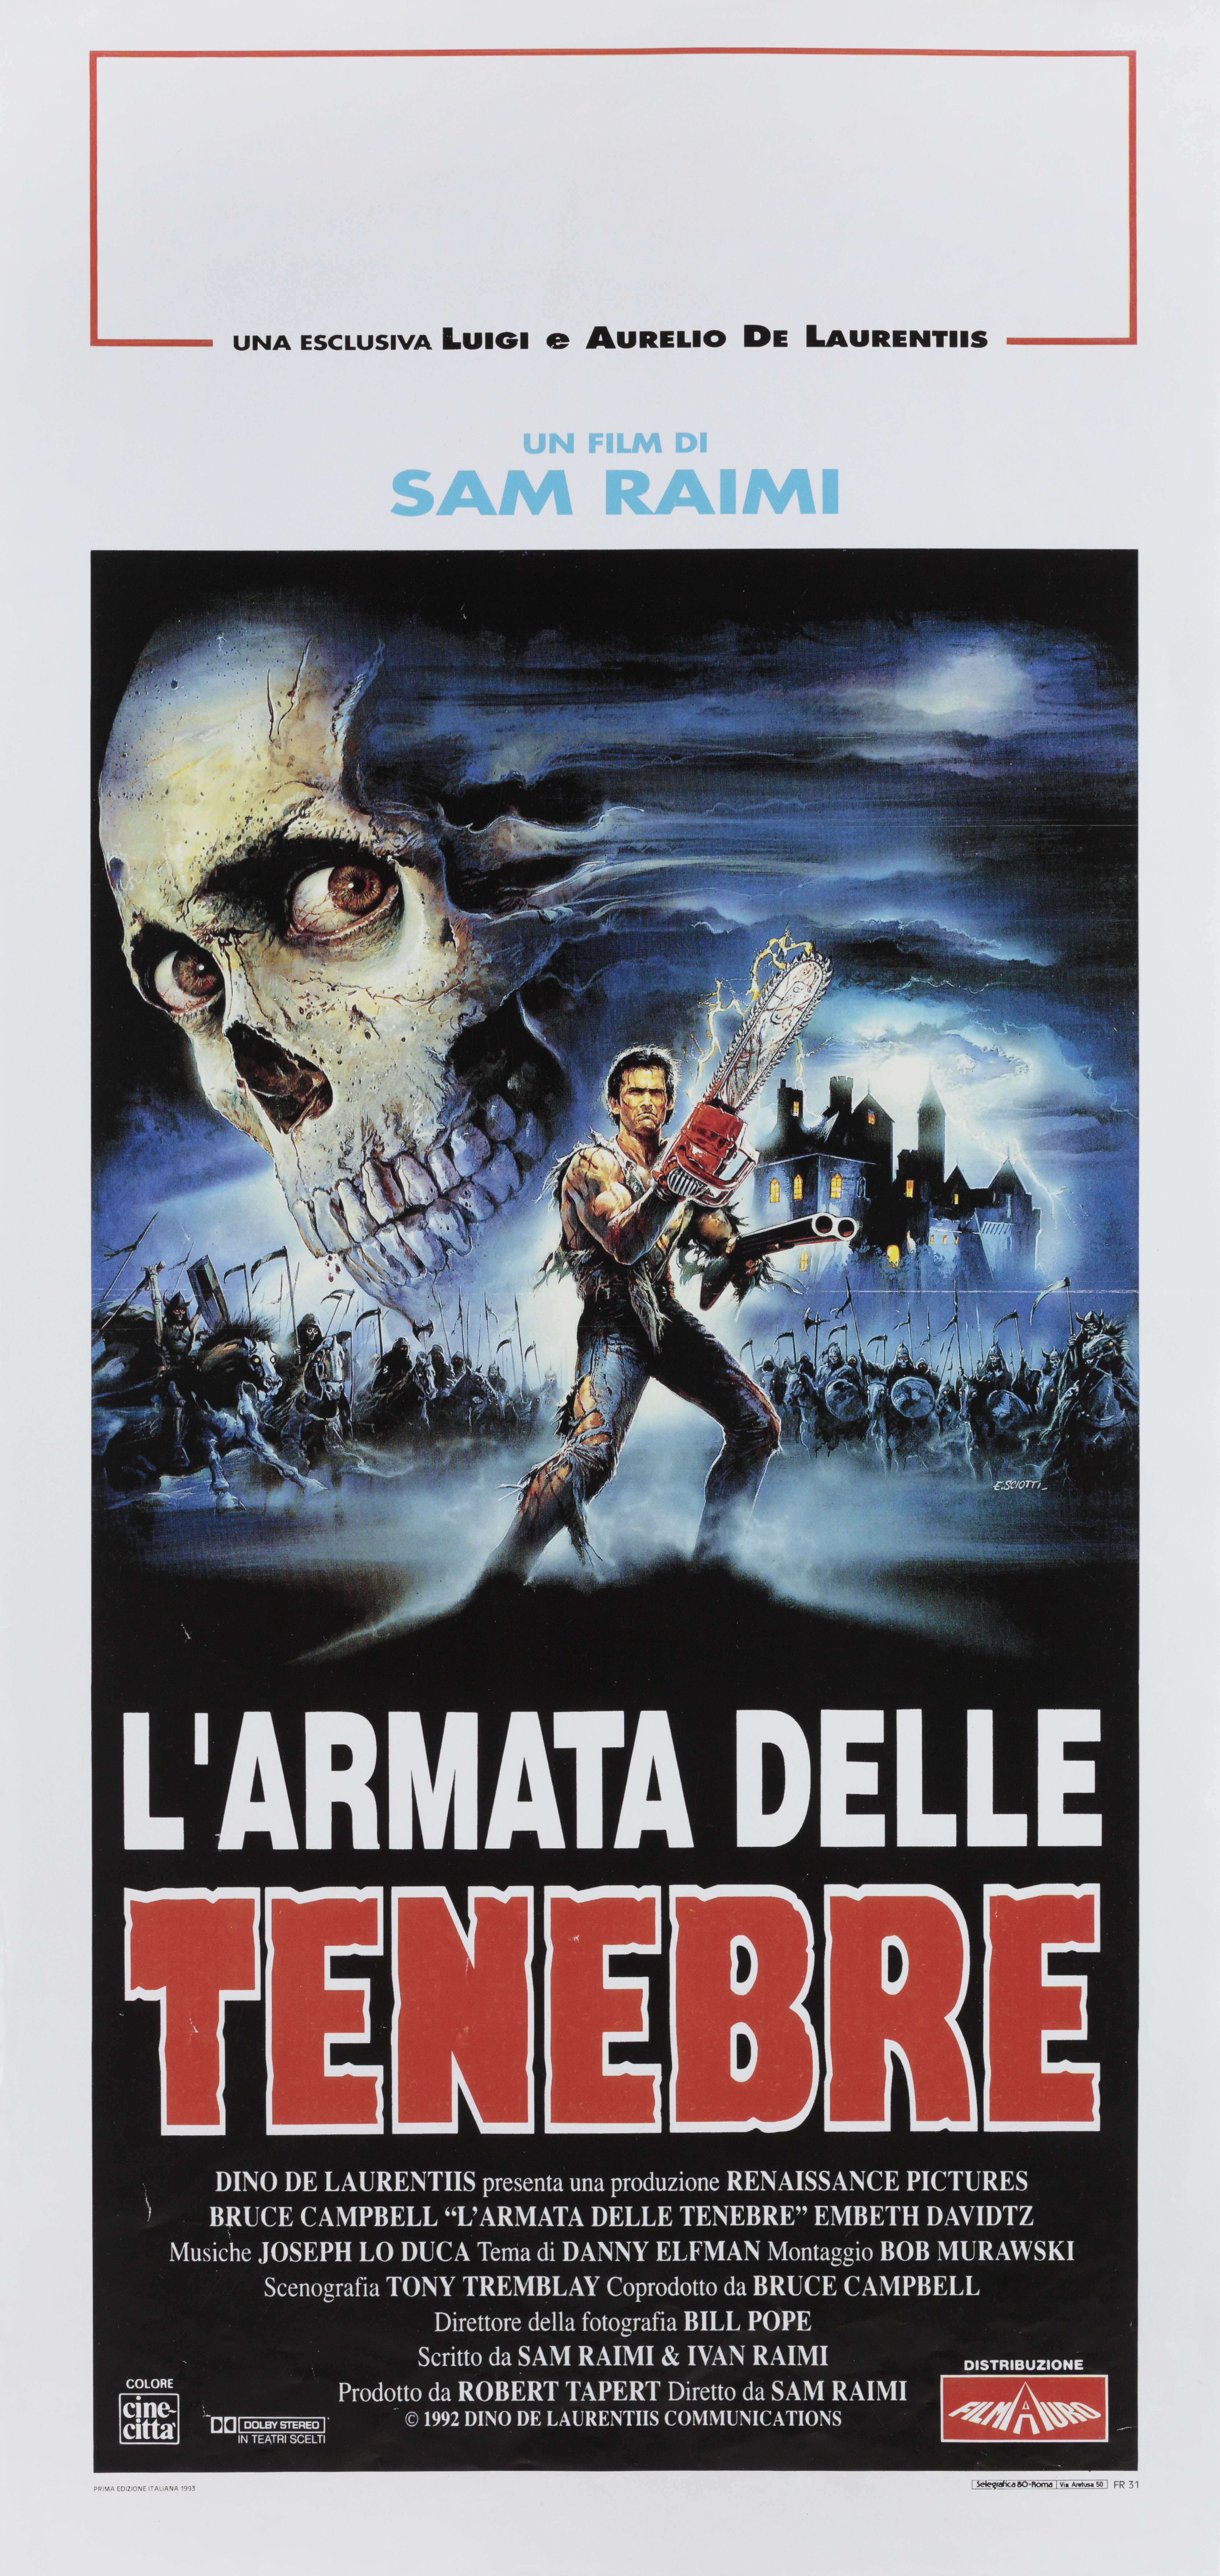 Армия тьмы (Army of Darkness, 1992), режиссёр Сэм Рэйми, итальянский постер к фильму, автор Энцо Скиотти (ужасы, 1993 год)